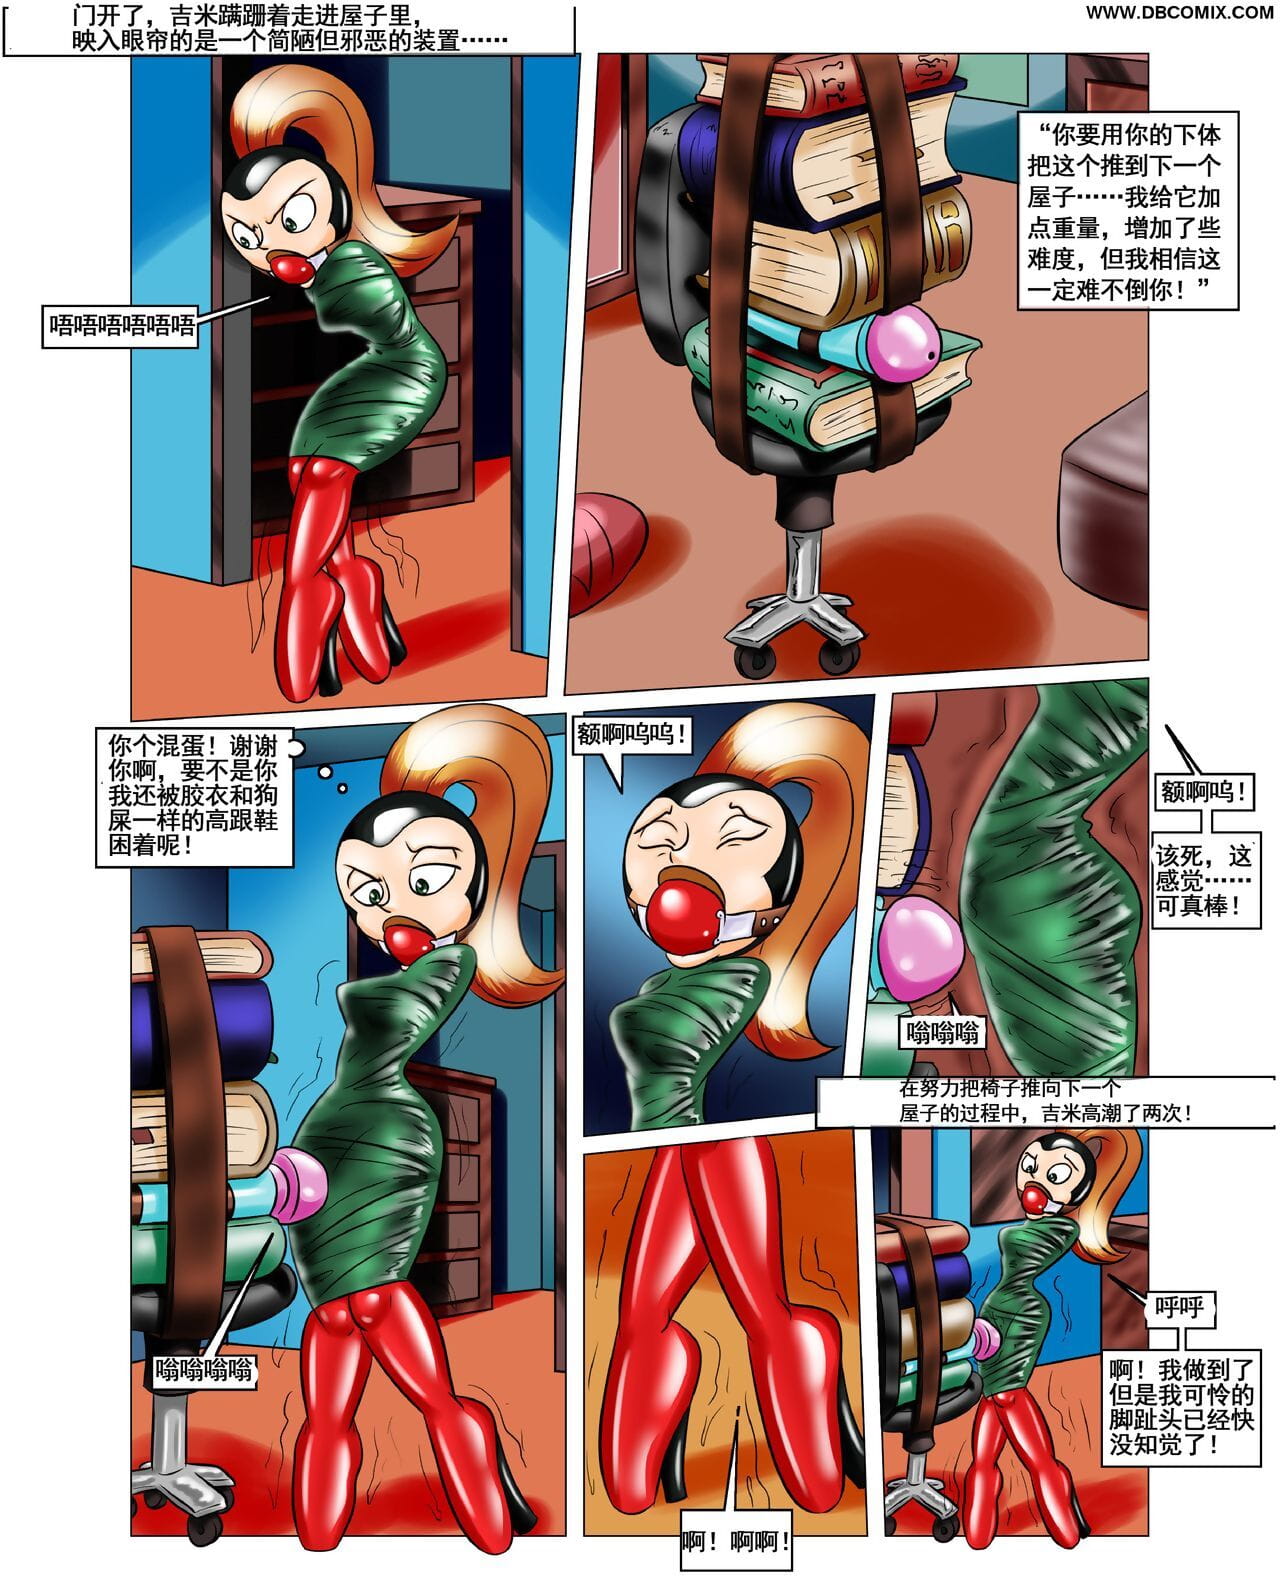 impossivelmente obsceno rons Presente 【大头翻译】 page 1